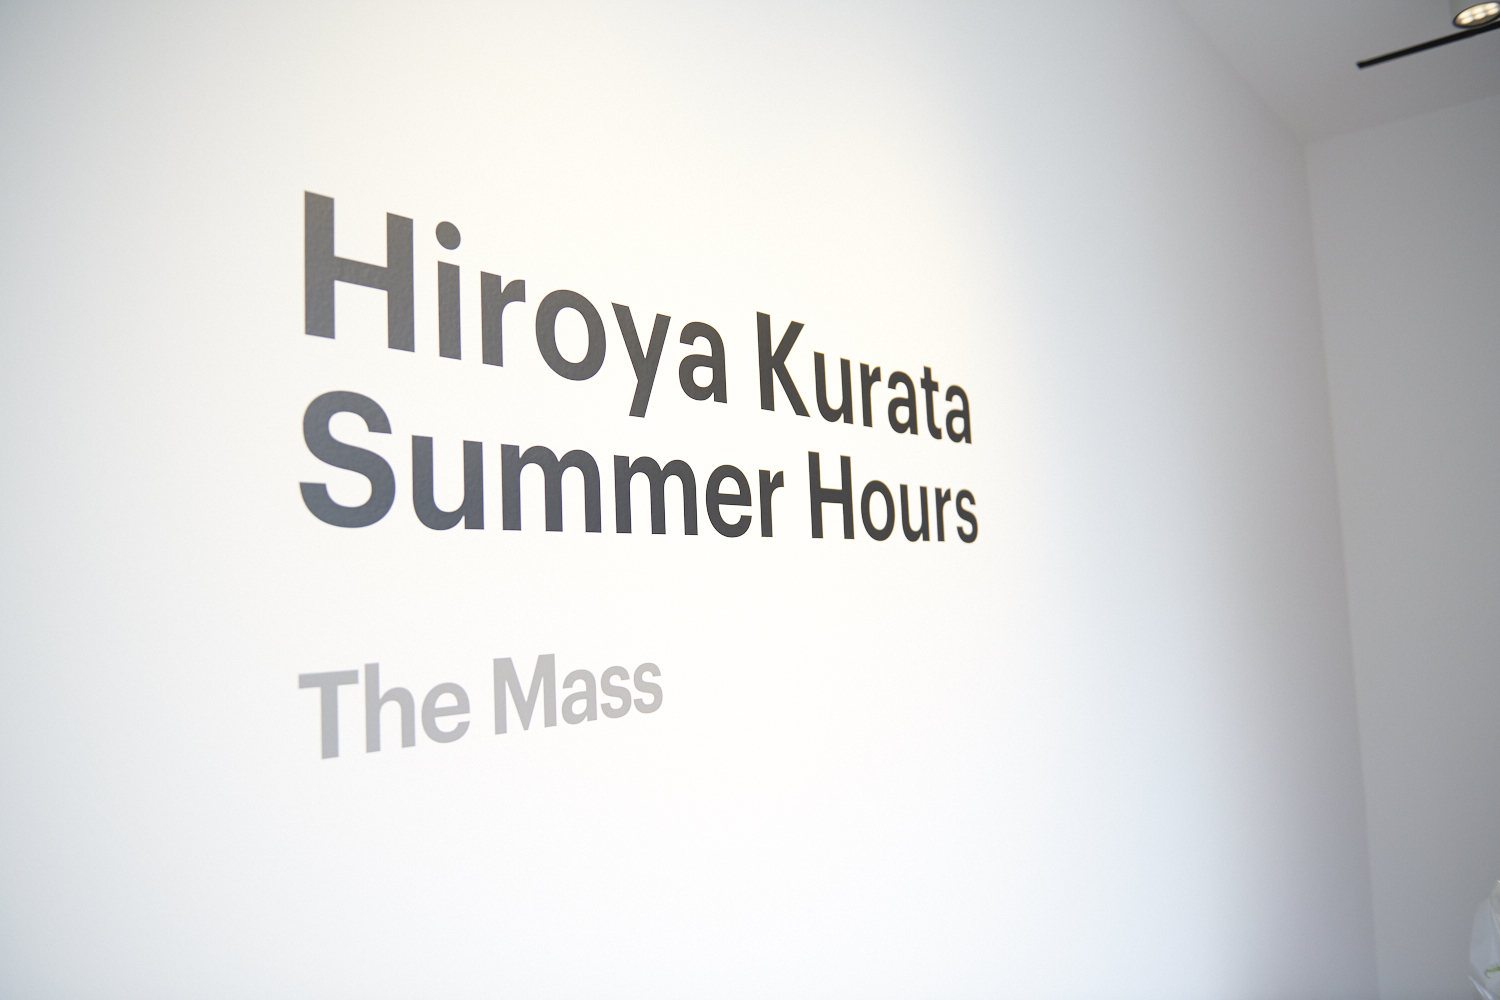 Hiroya Kurata “Summer Hours”